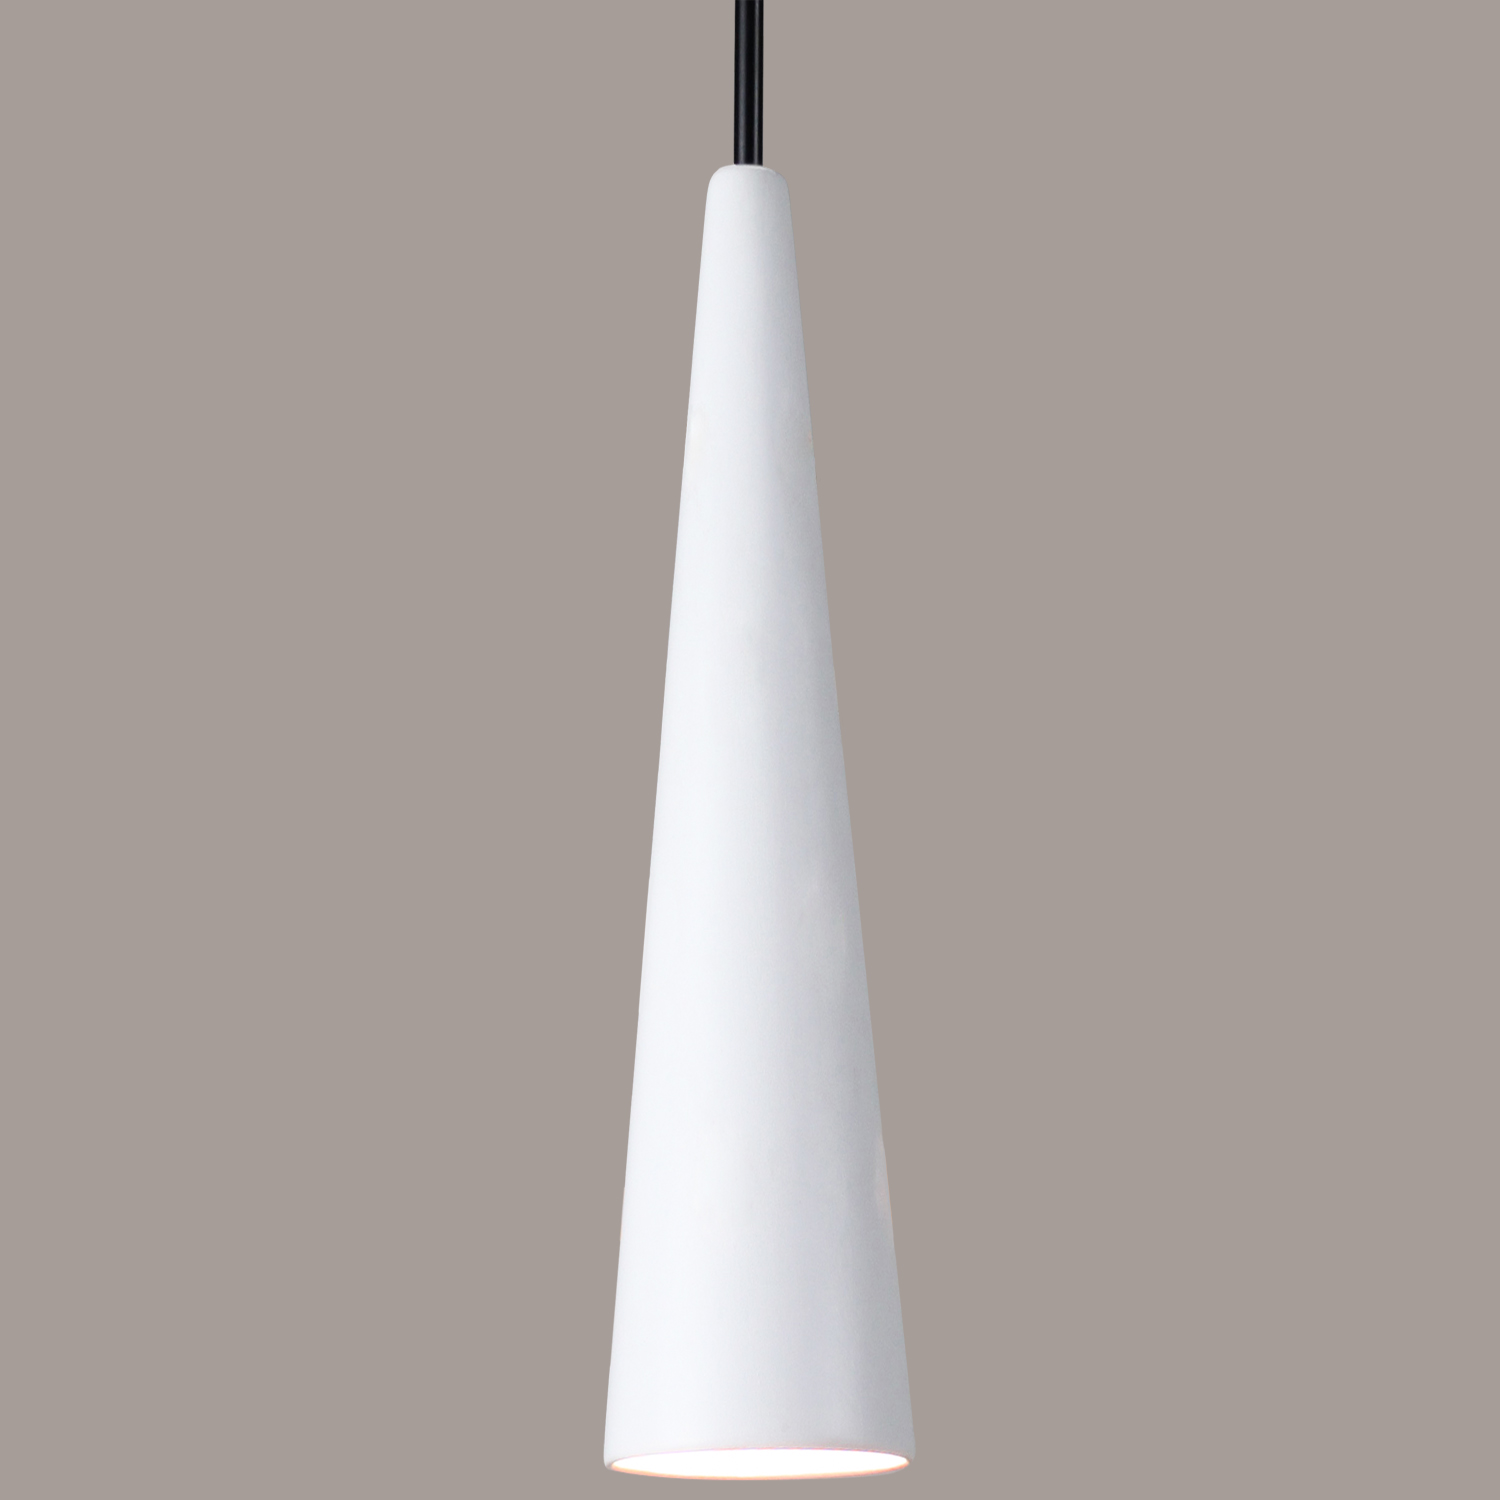 A19 MP25-A31-BCC Iconic Mini Pendant : Satin White (Black Cord & Canopy)in Satin White